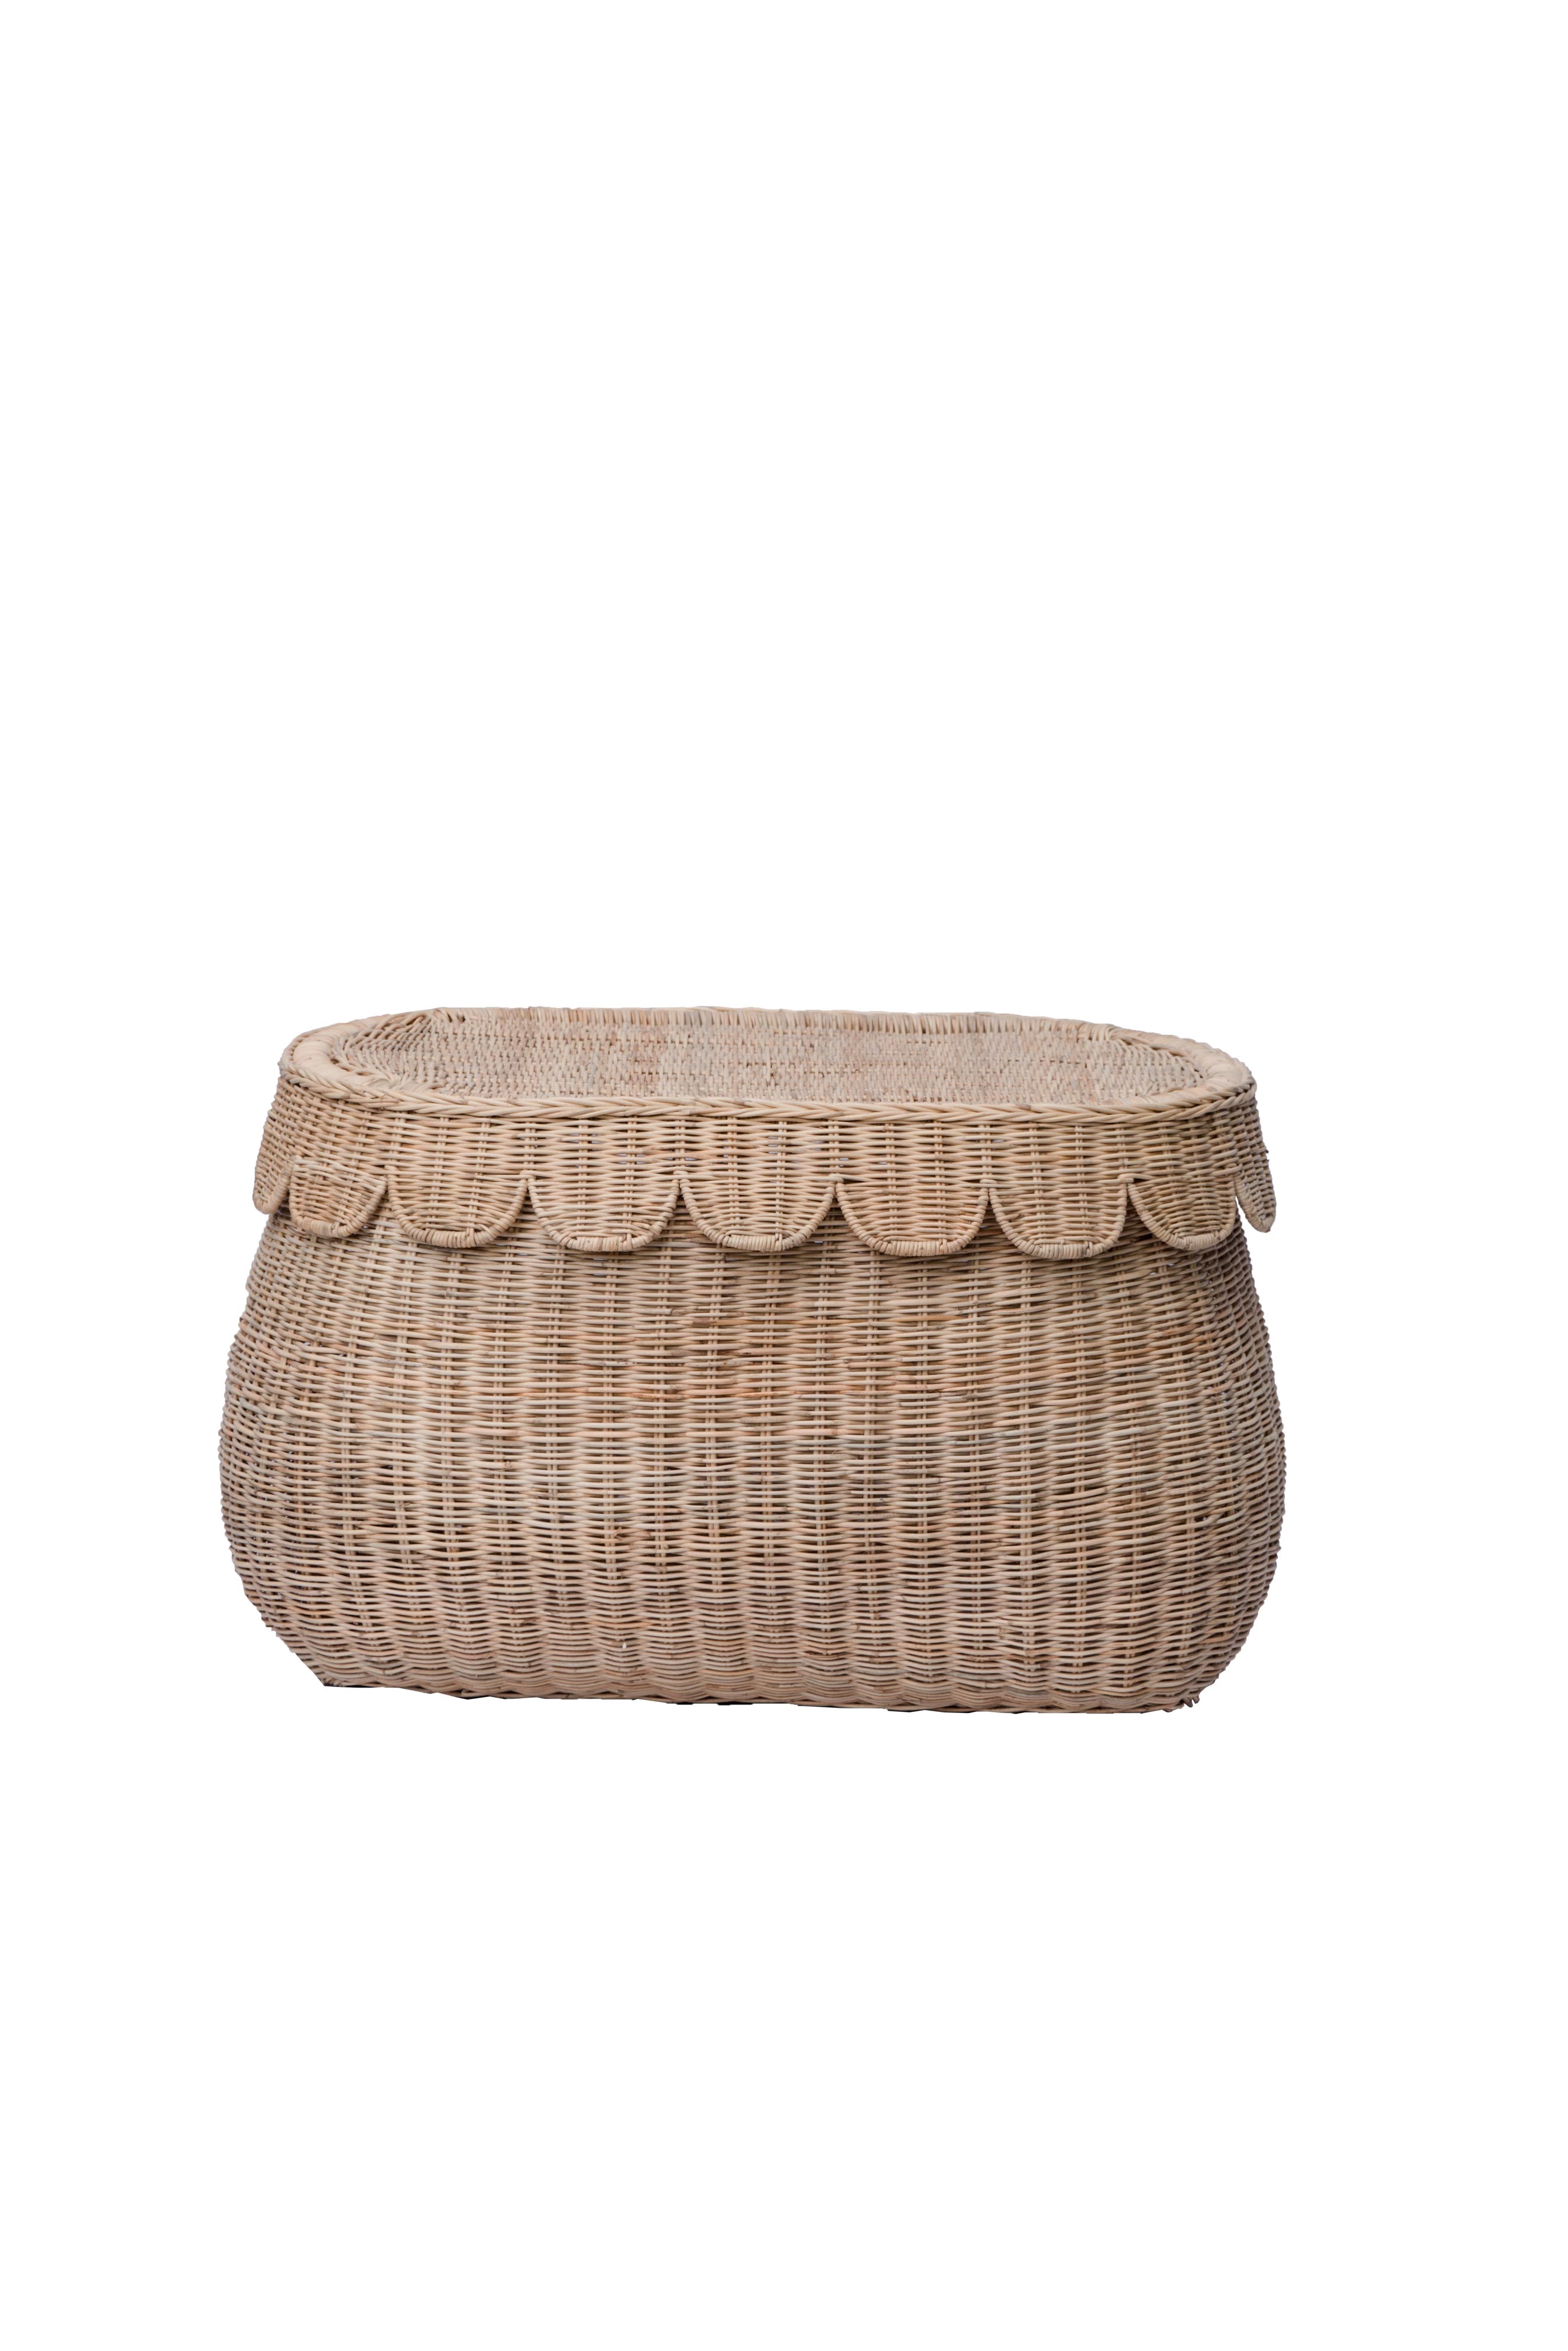 Scalloped Rattan Basket - Small - Pre-Sale